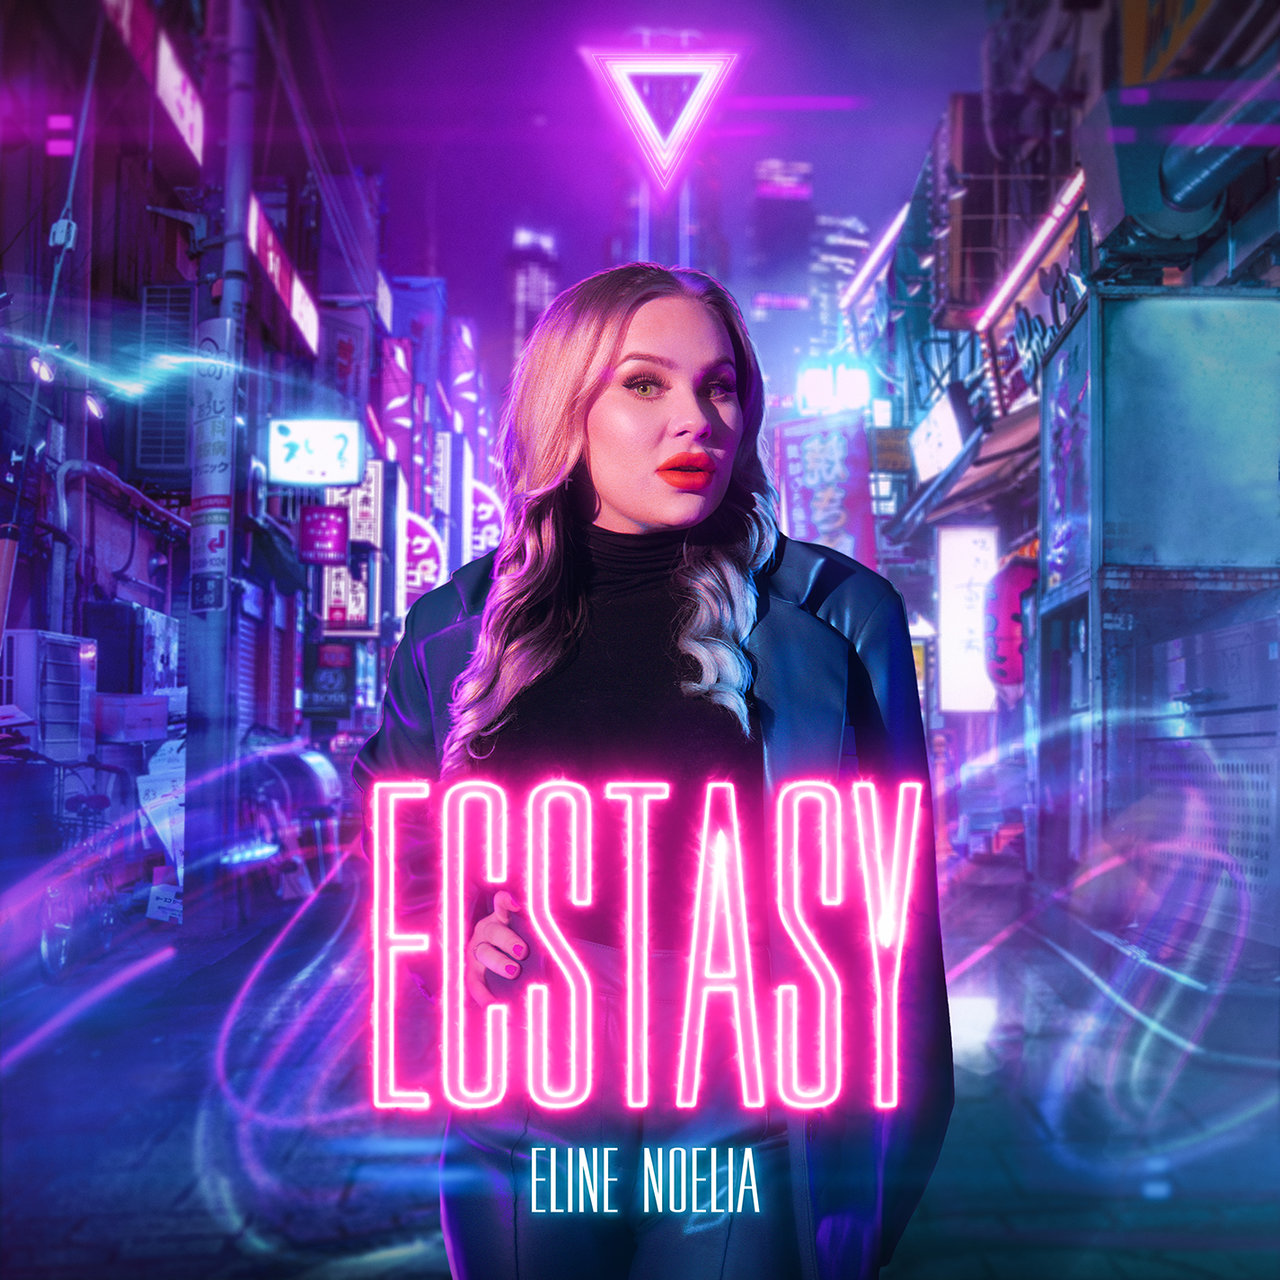 Eline Noelia — Ecstasy cover artwork